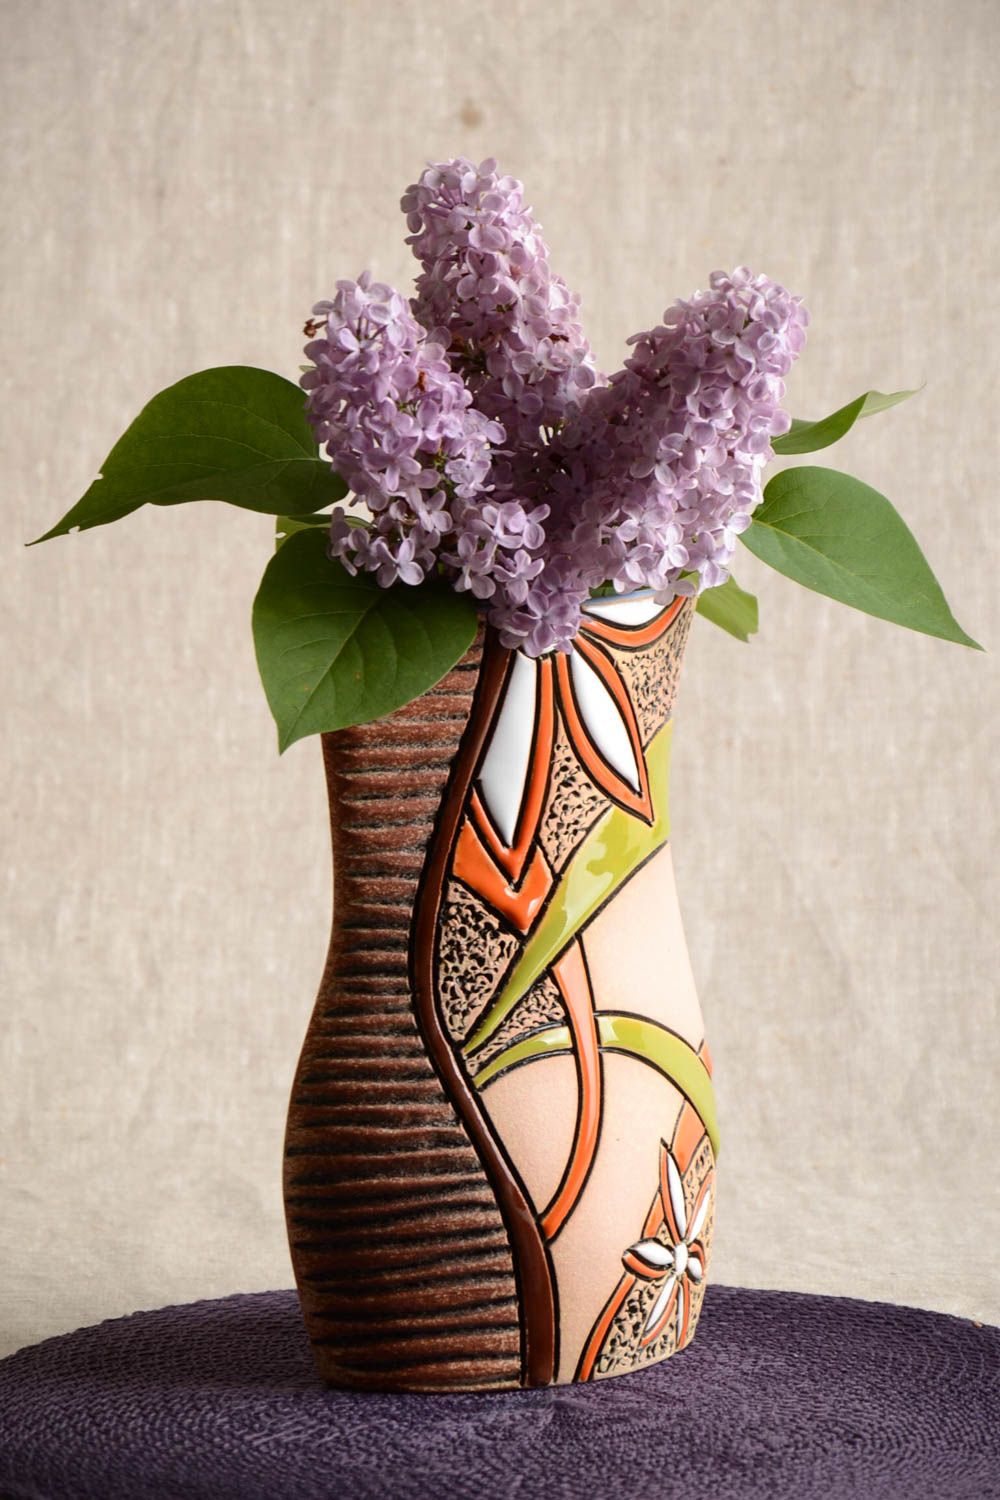 Полуфарфоровая ваза керамическая расписанная пигментами хэнд мэйд объемом 1.5 л фото 1